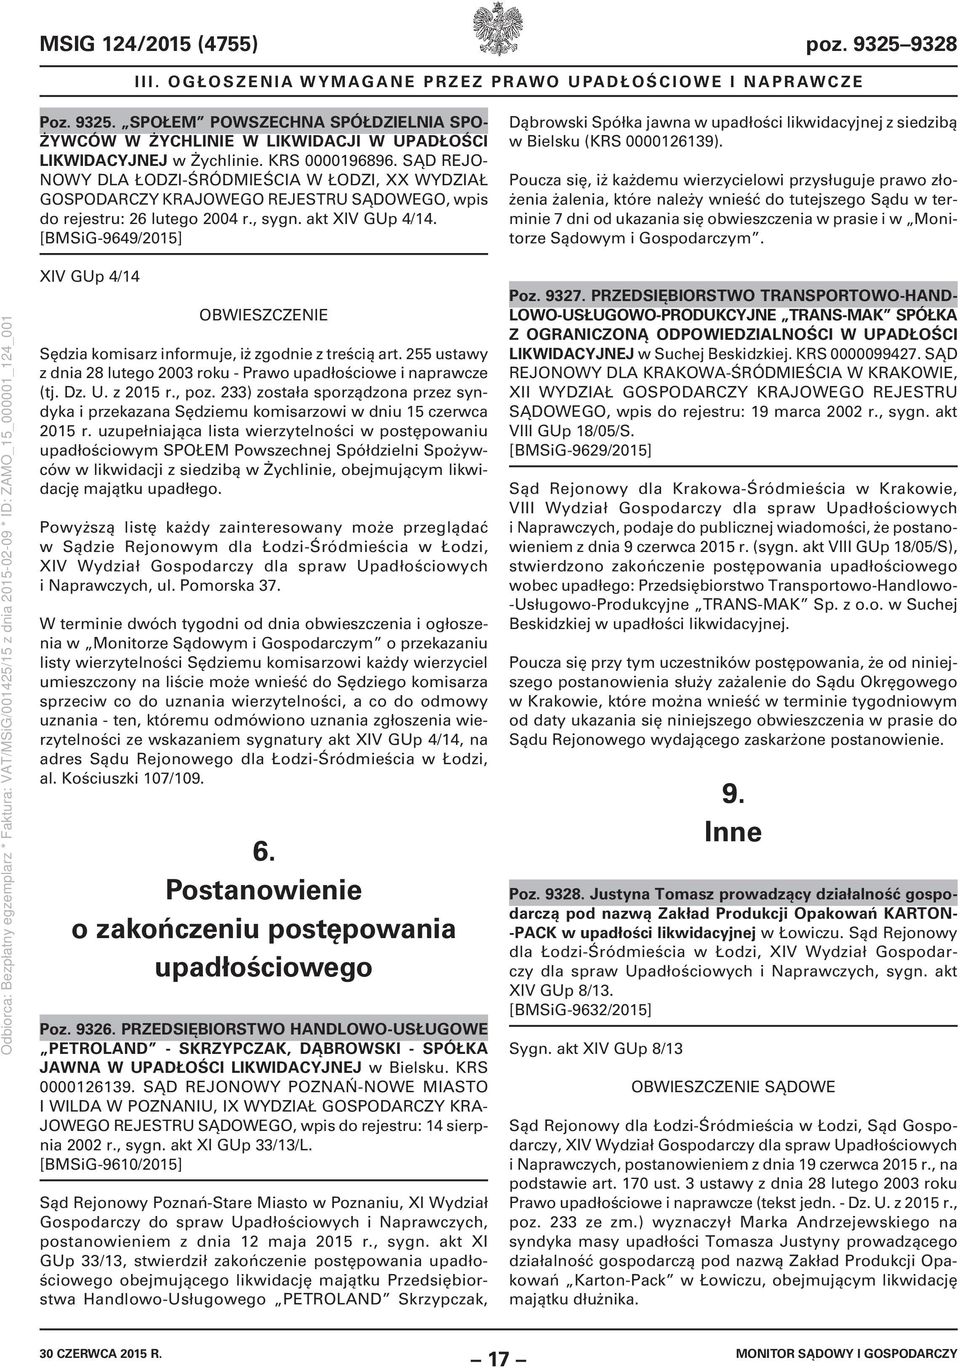 [BMSiG-9649/2015] Dąbrowski Spółka jawna w upadłości likwidacyjnej z siedzibą w Bielsku (KRS 0000126139).